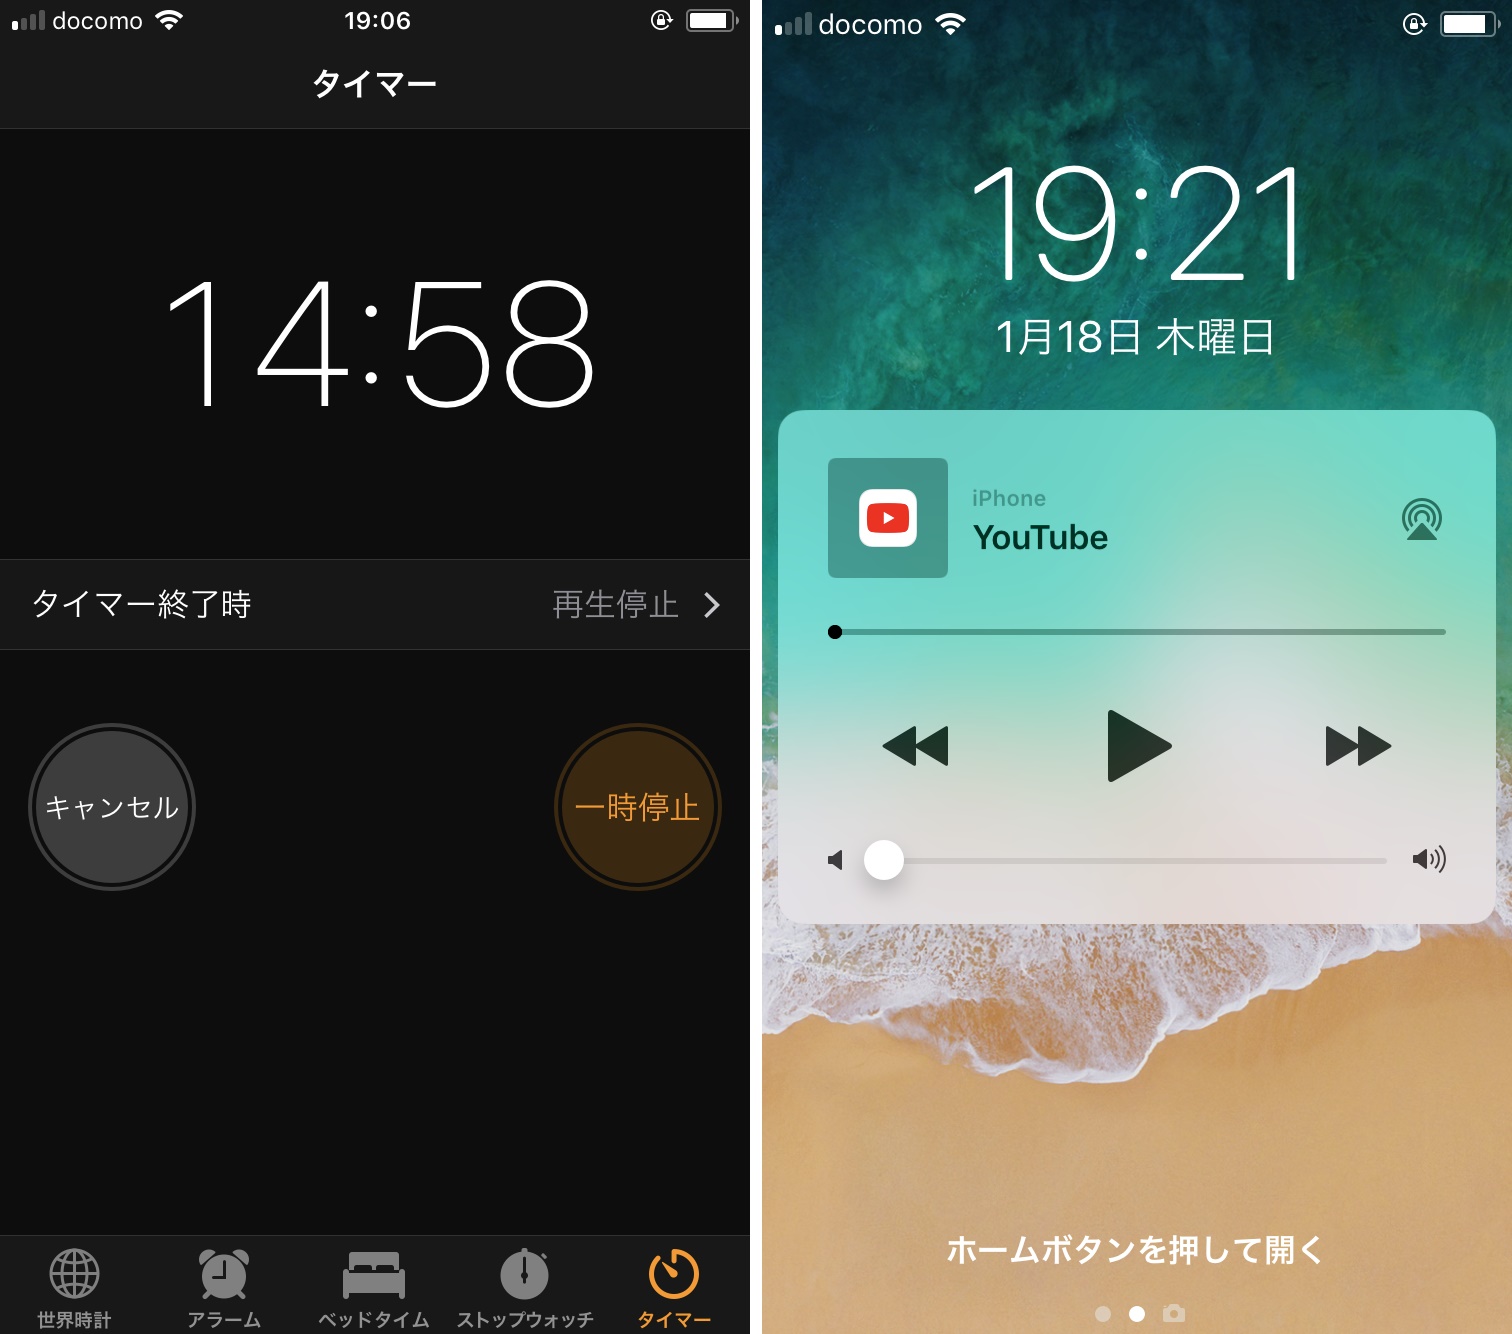 これで寝落ちしても安心 時間になると動画の再生を自動的にオフにする Iphone Tips Engadget 日本版